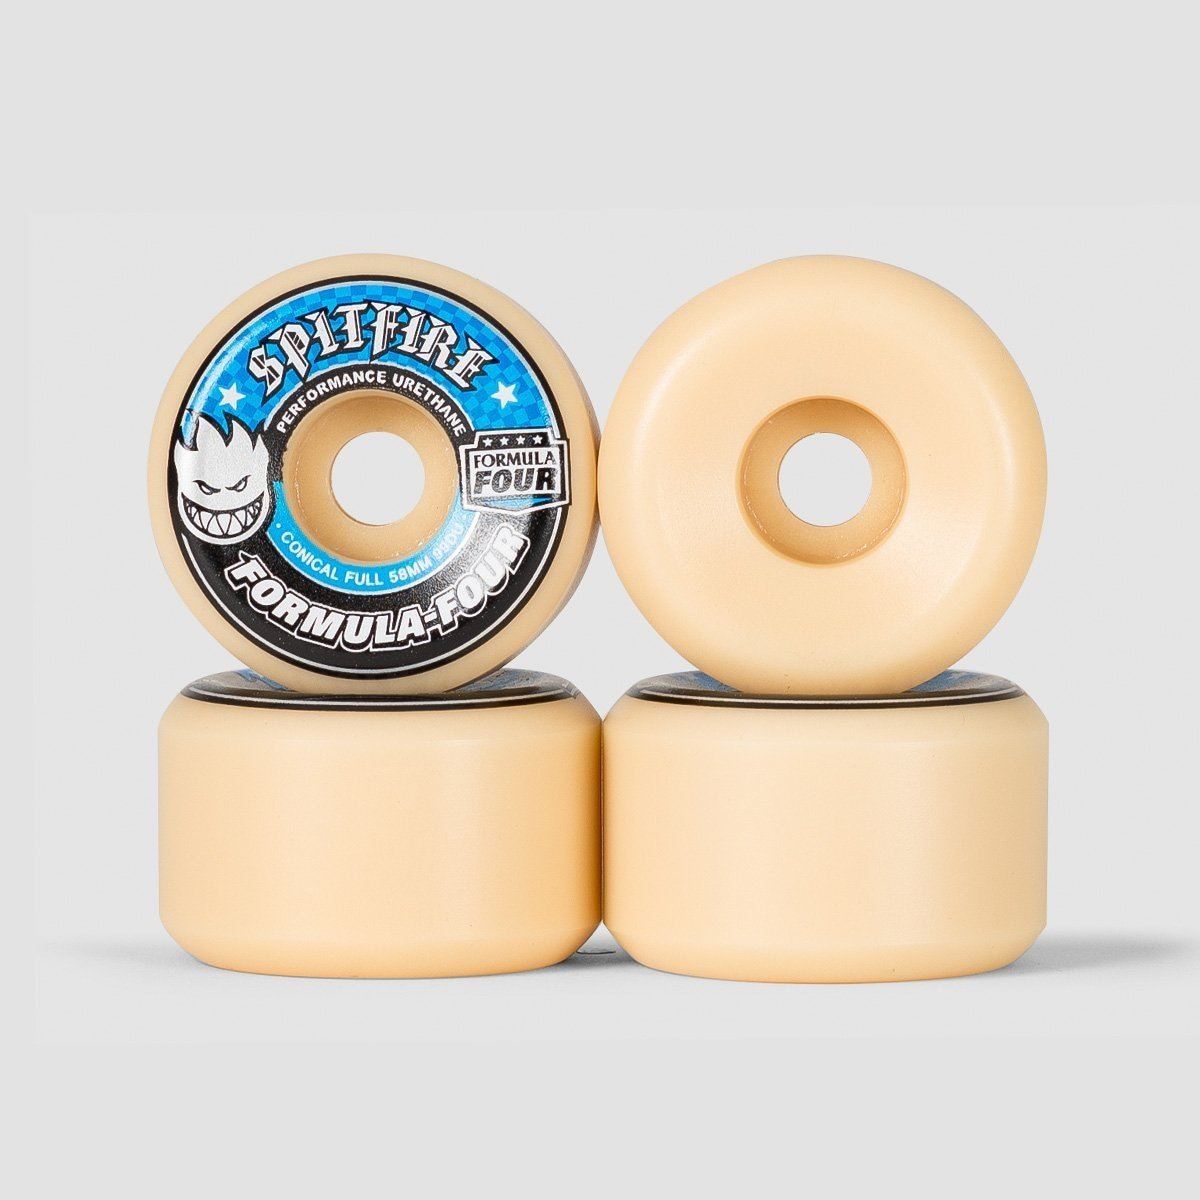 Spitfire Formula Four Conical Full 99du Skateboard Wheels Natural/Blue 58mm